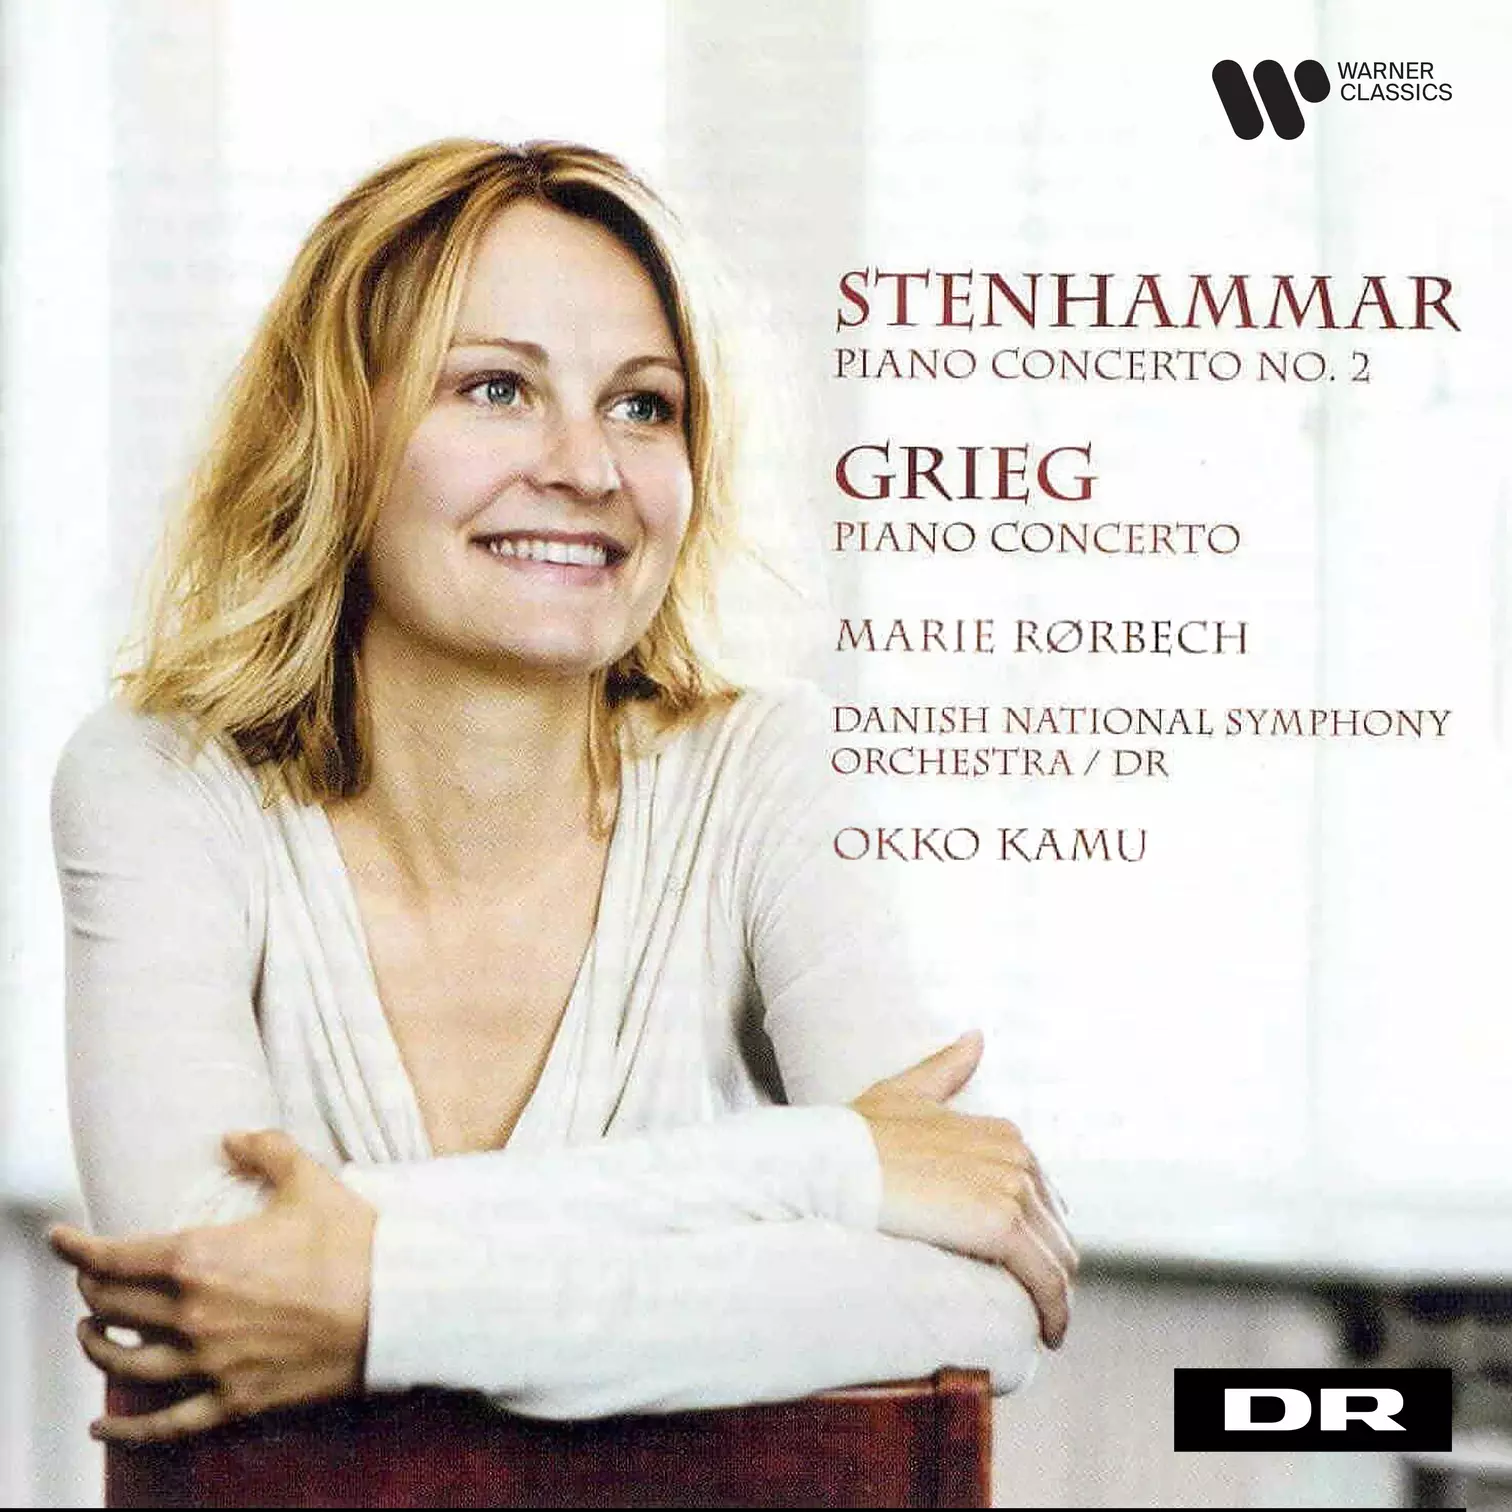 Stenhammar: Piano Concerto No. 2 - Grieg: Piano Concerto & In Autumn